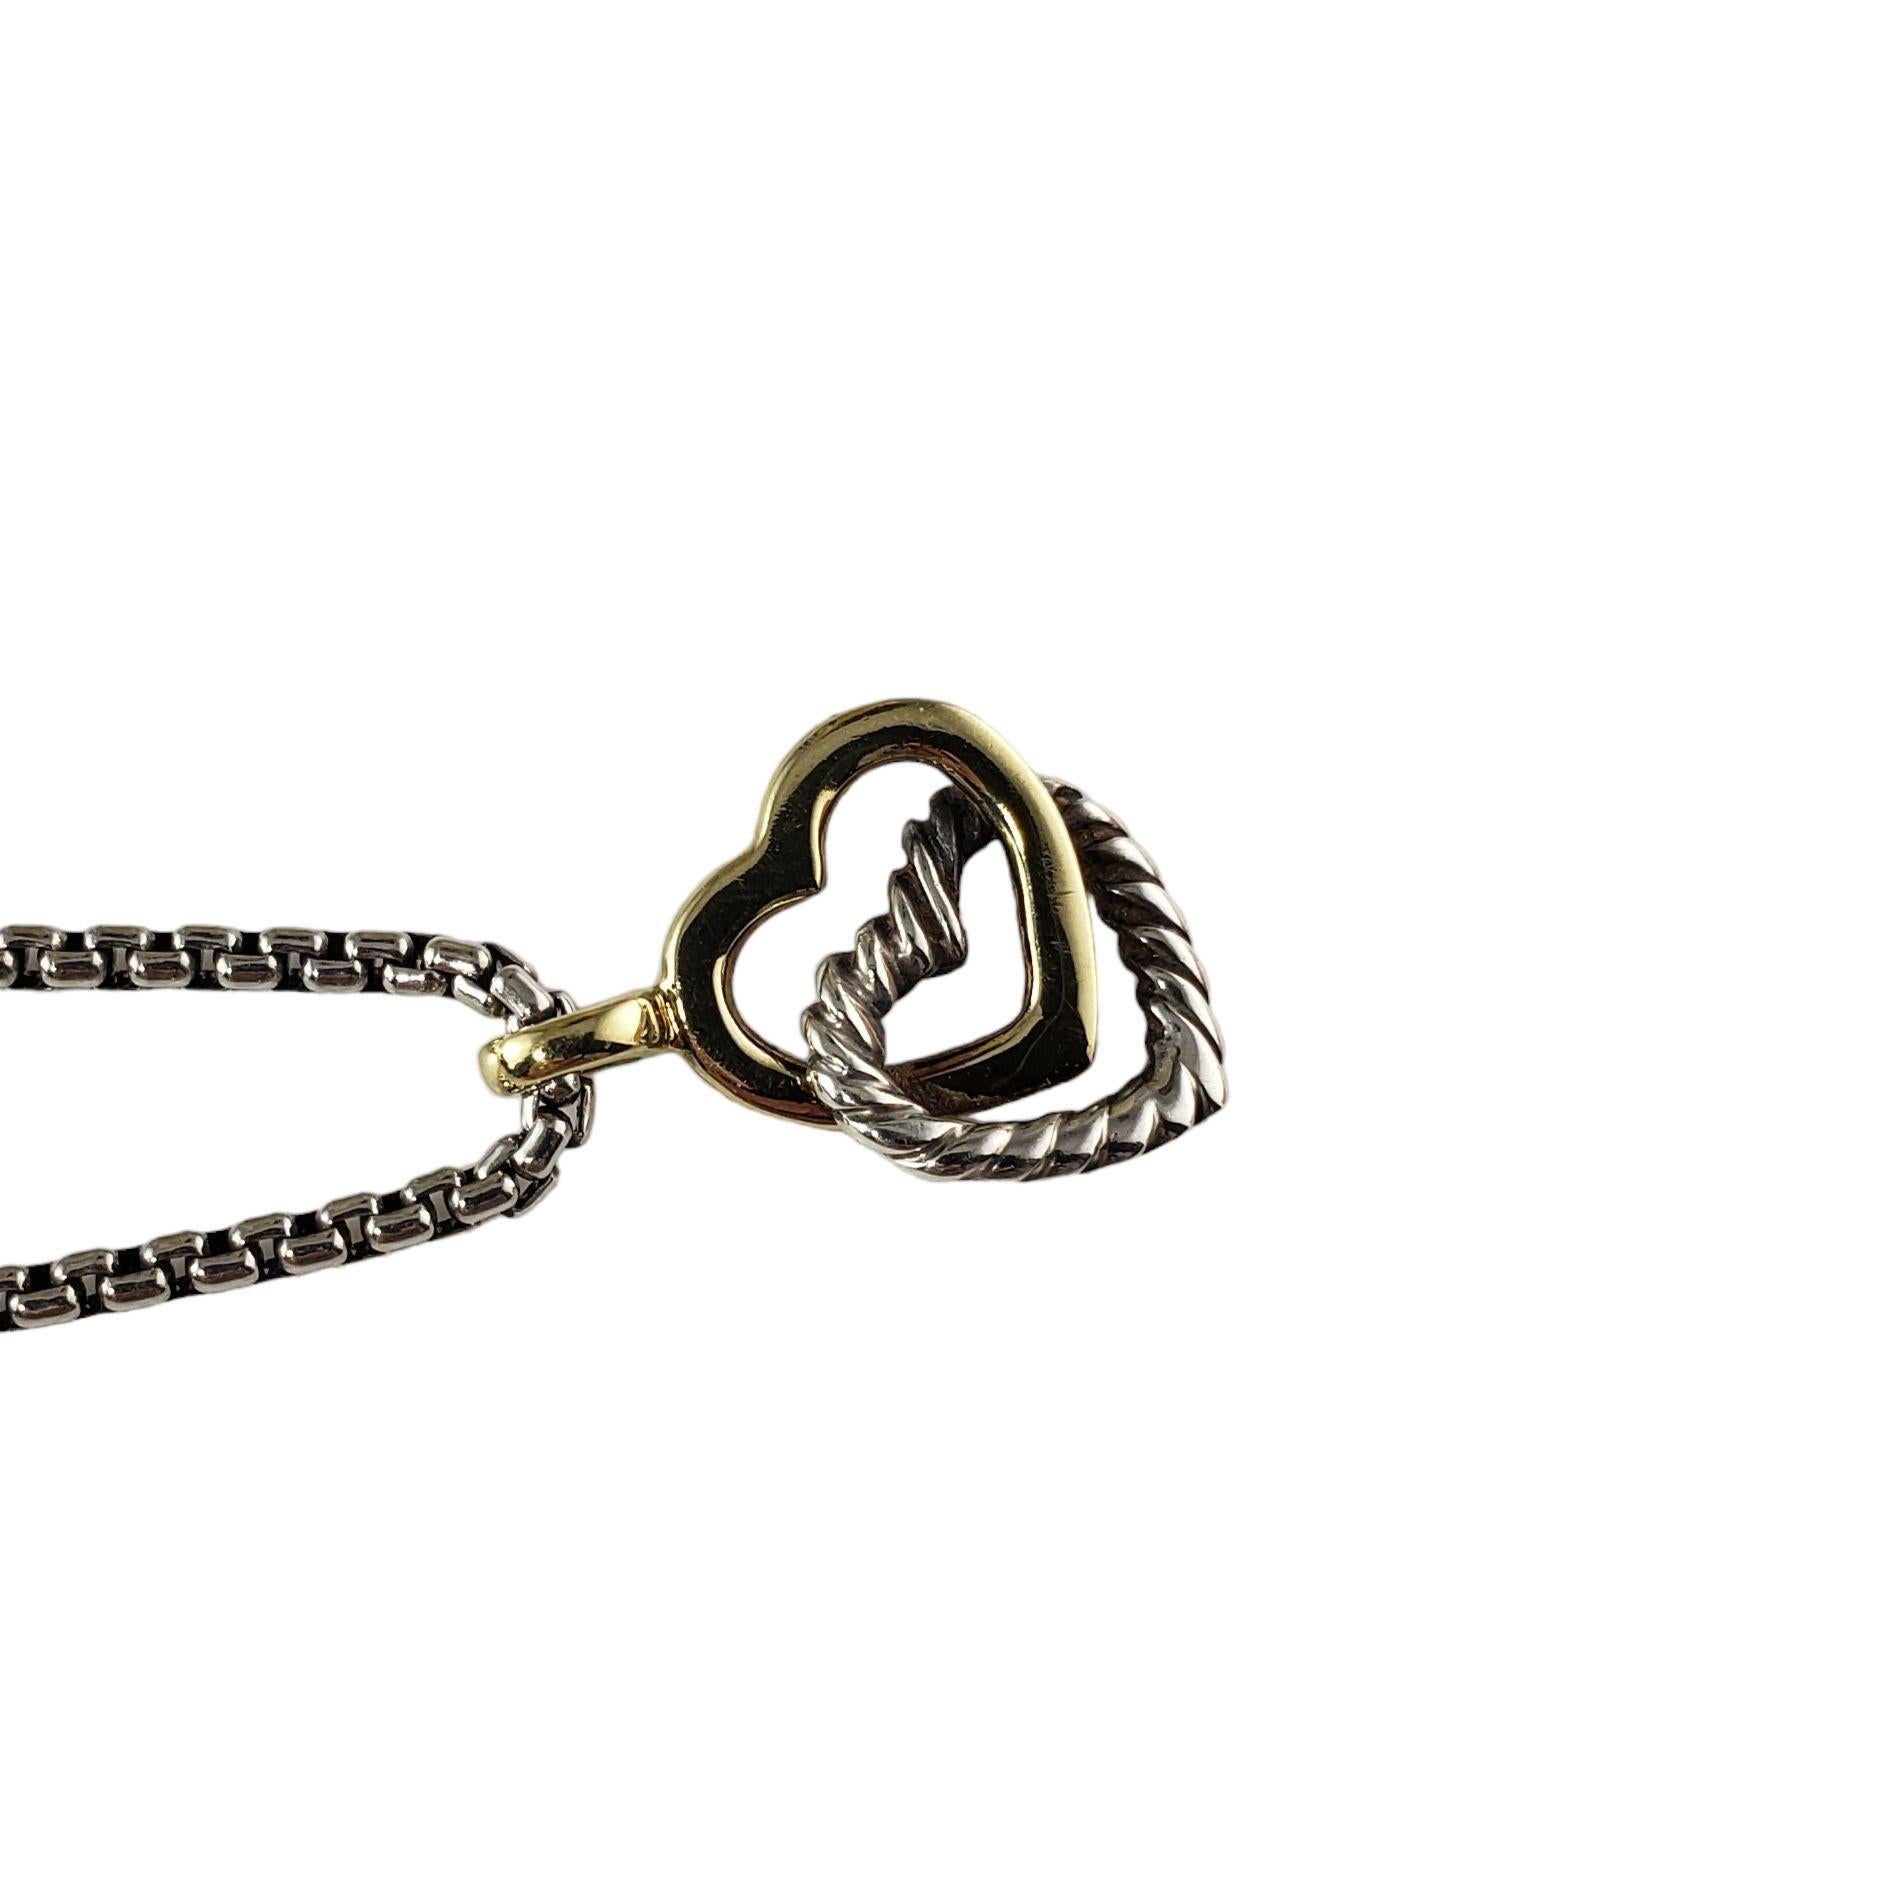 david yurman heart necklace